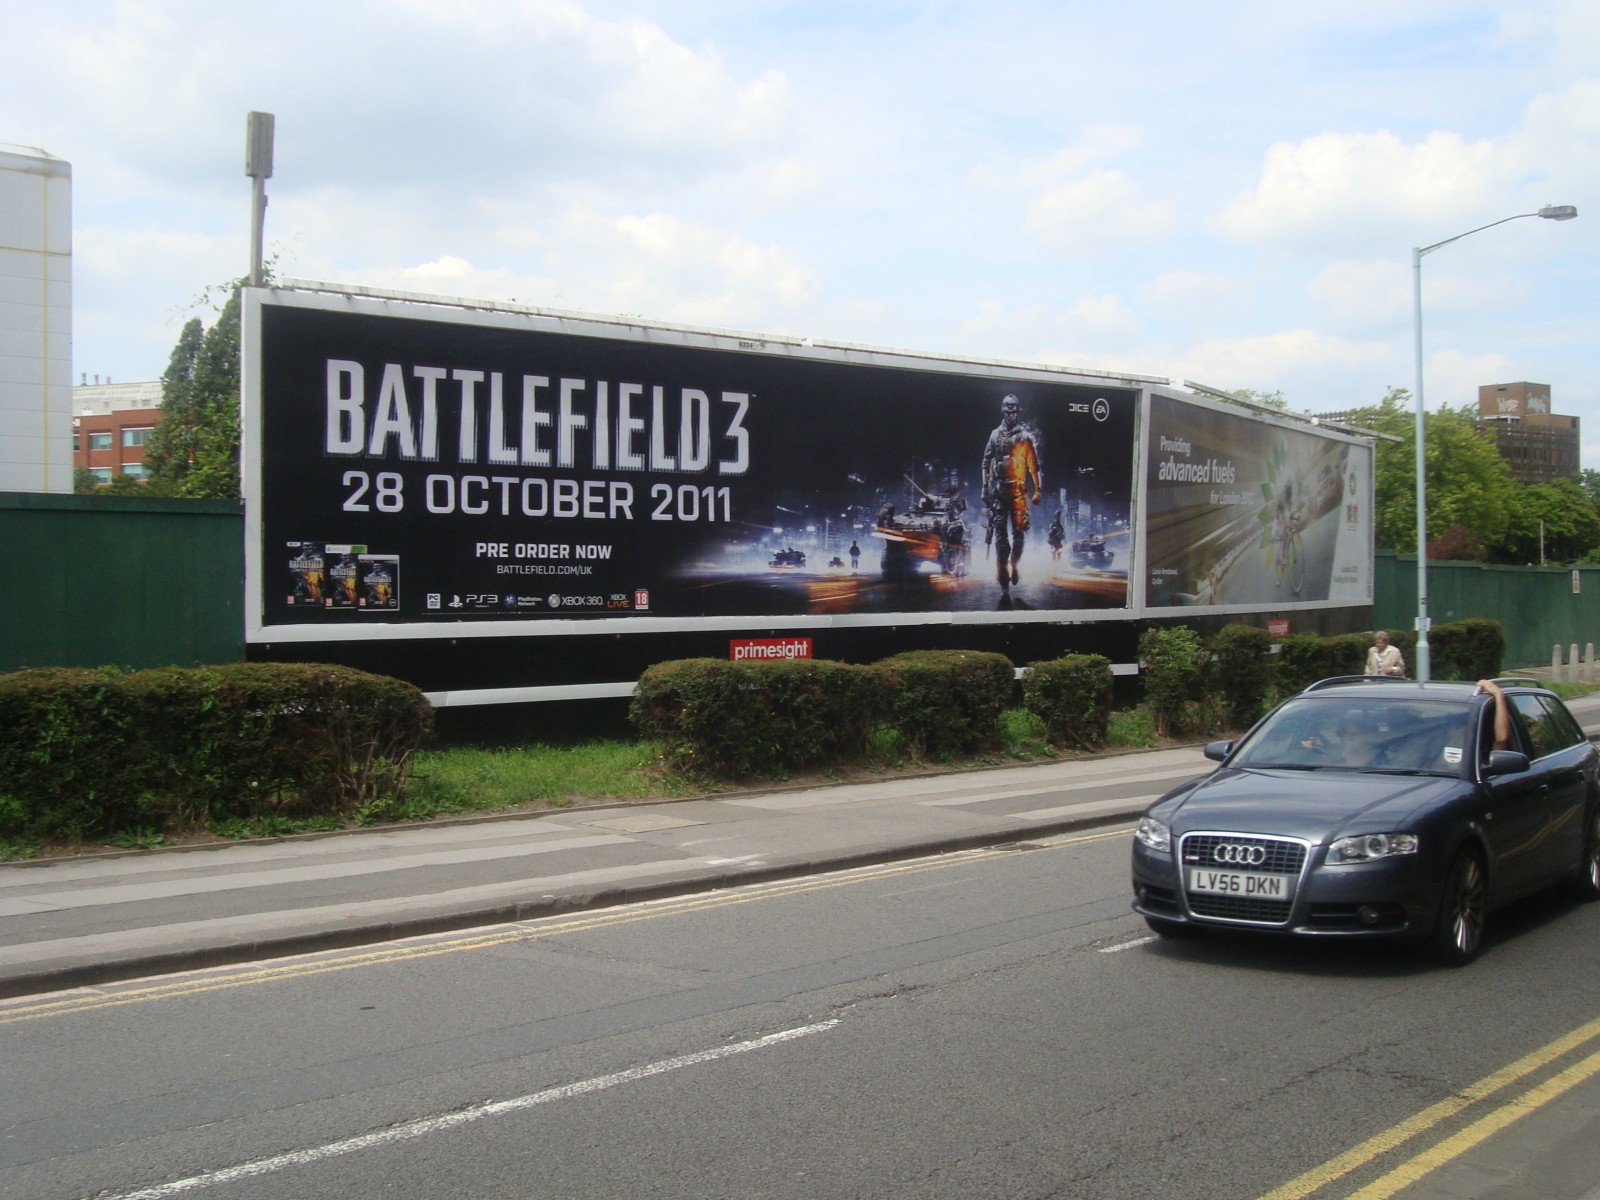 bf3 werbung2 - Battlefield 3: 50 Millionen Dollar Werbemaßnahmen beginnen